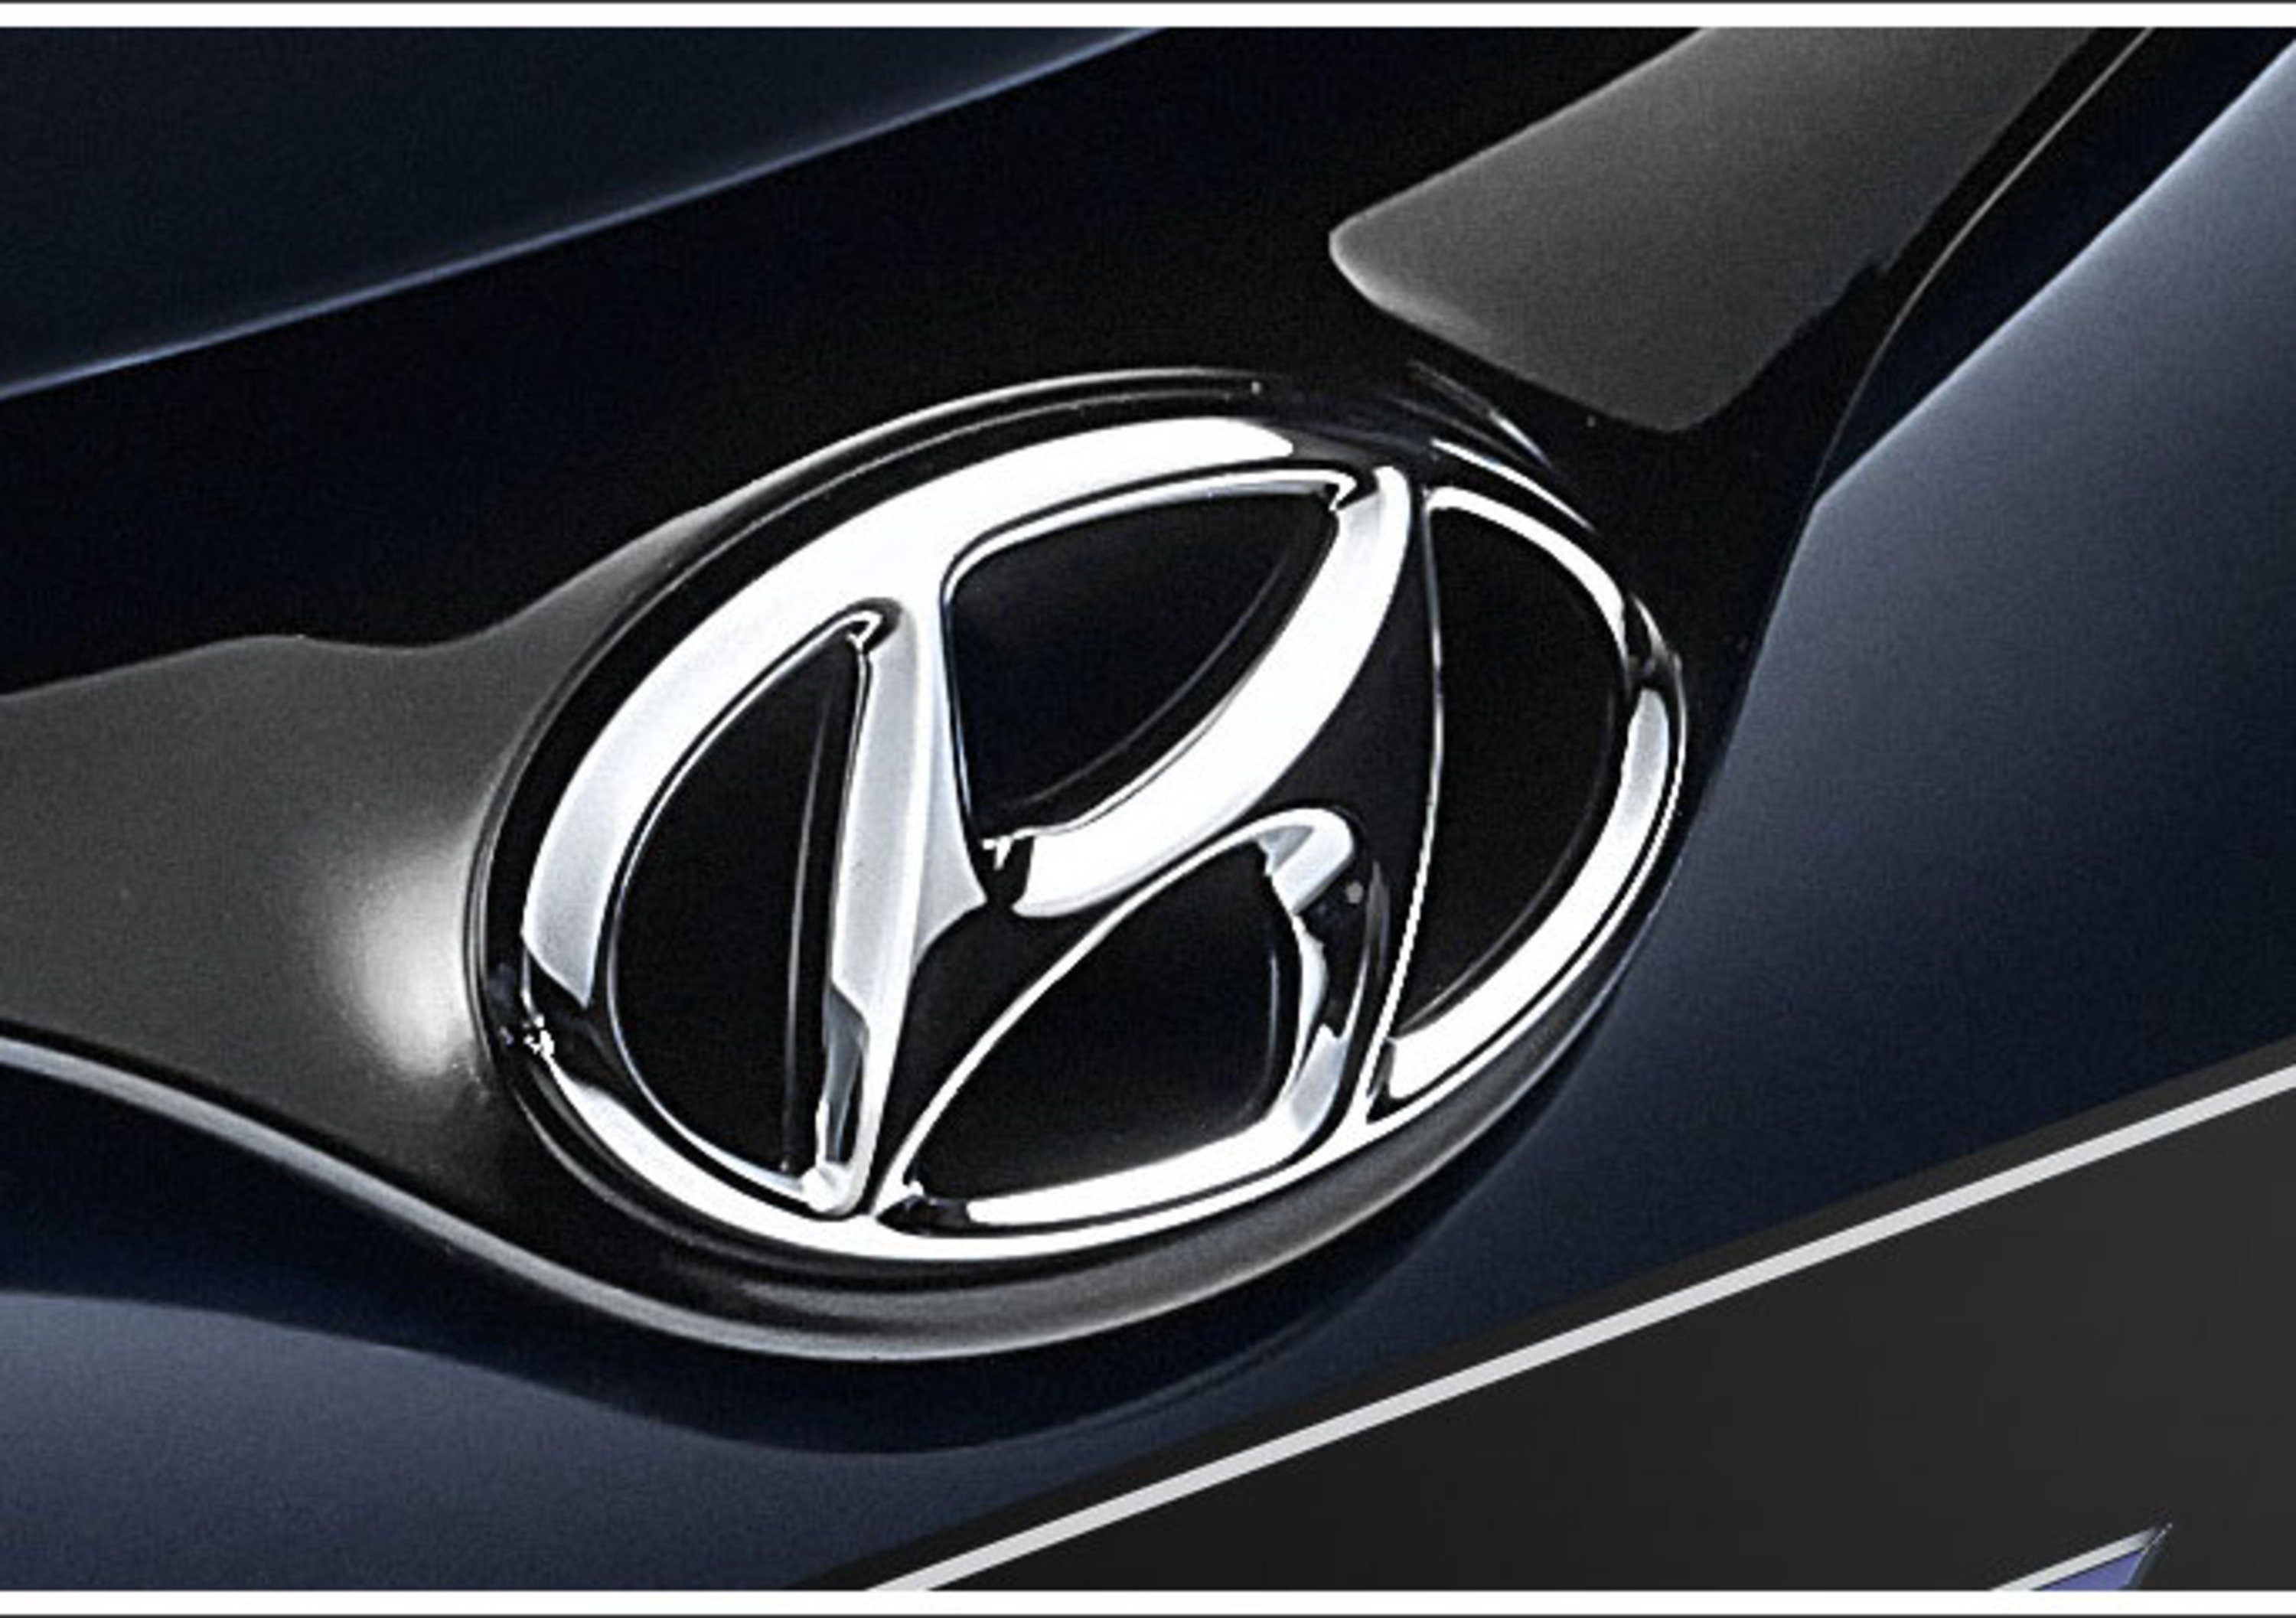 Accusa di insider trading per i dirigenti Hyundai?